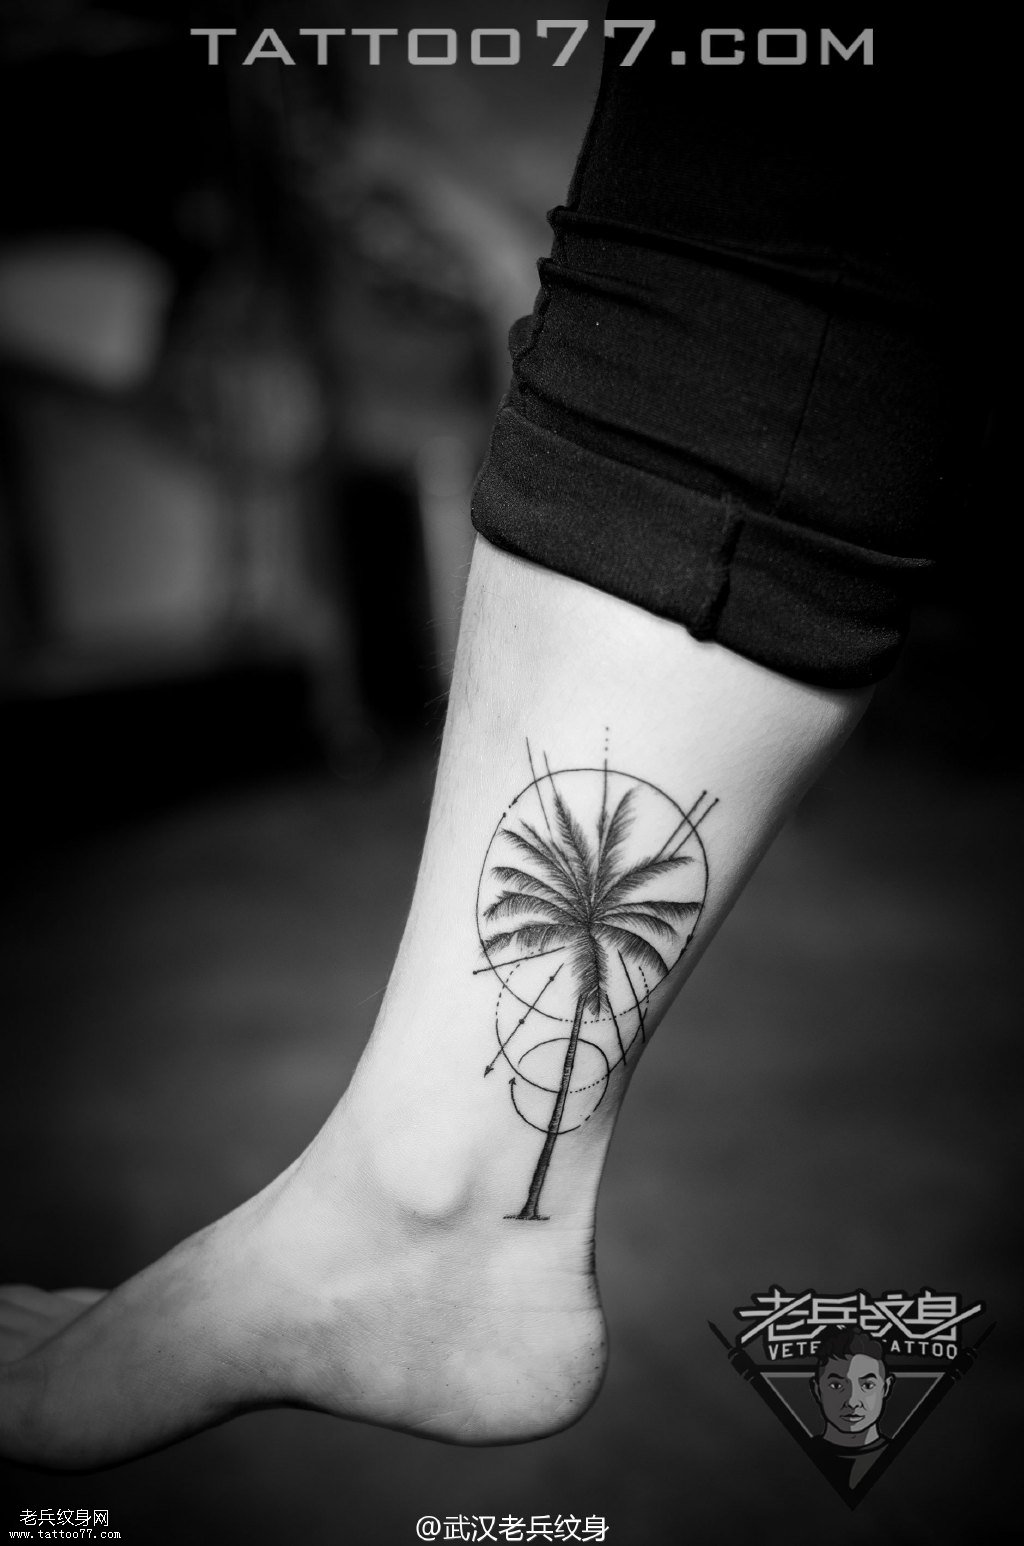 脚踝椰树纹身图案作品